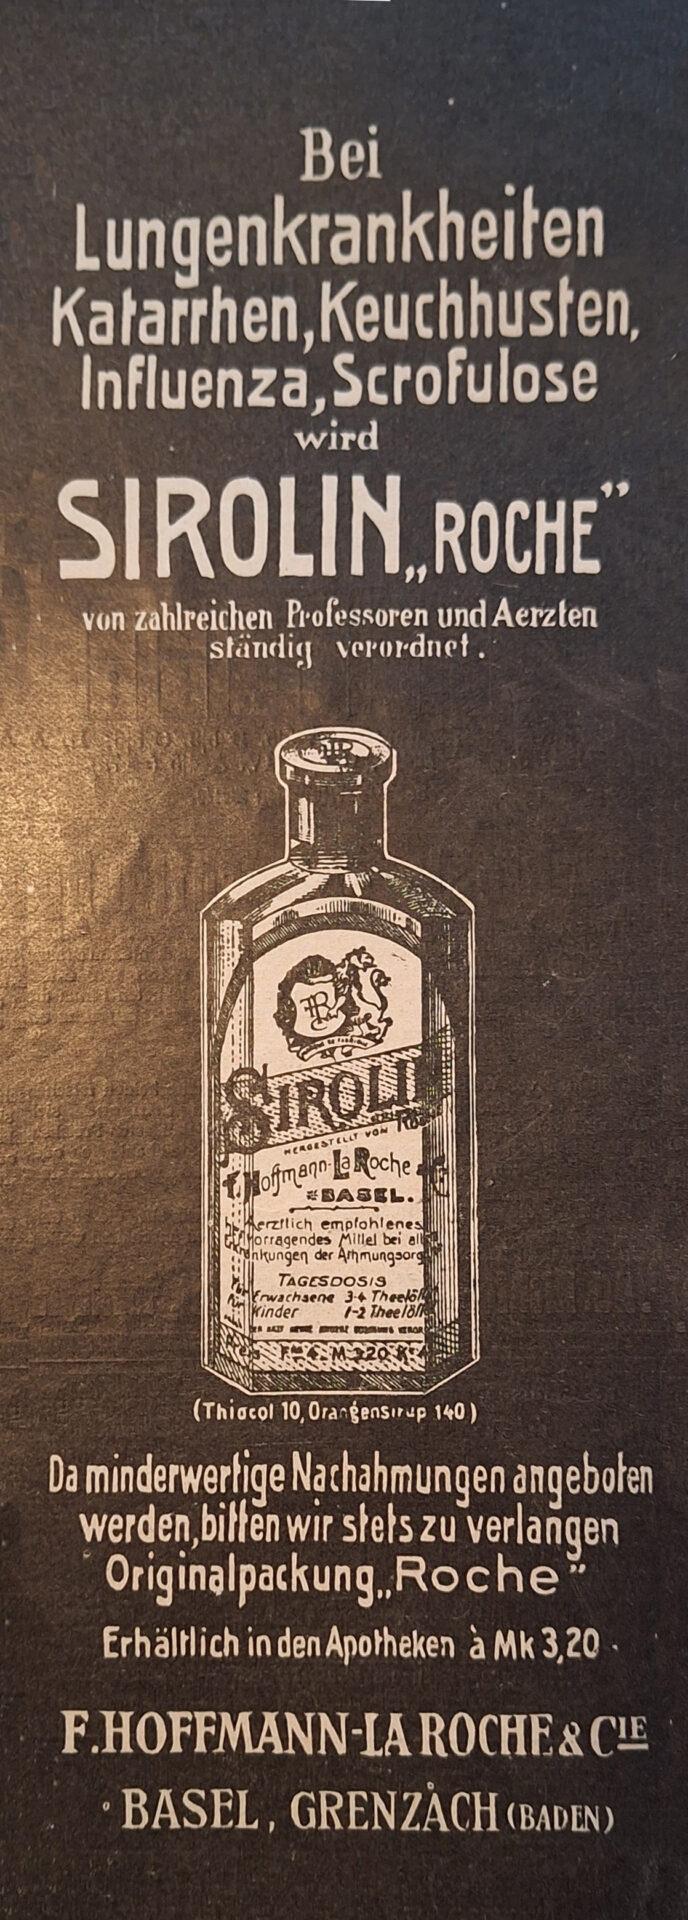 Sirolin von Hoffman-La Roche gegen Lungenkrankheiten, Katarrhe, Keuchhusten, Influenza - Werbung in der Zeitschrift Gartenlaube vor 120 Jahren